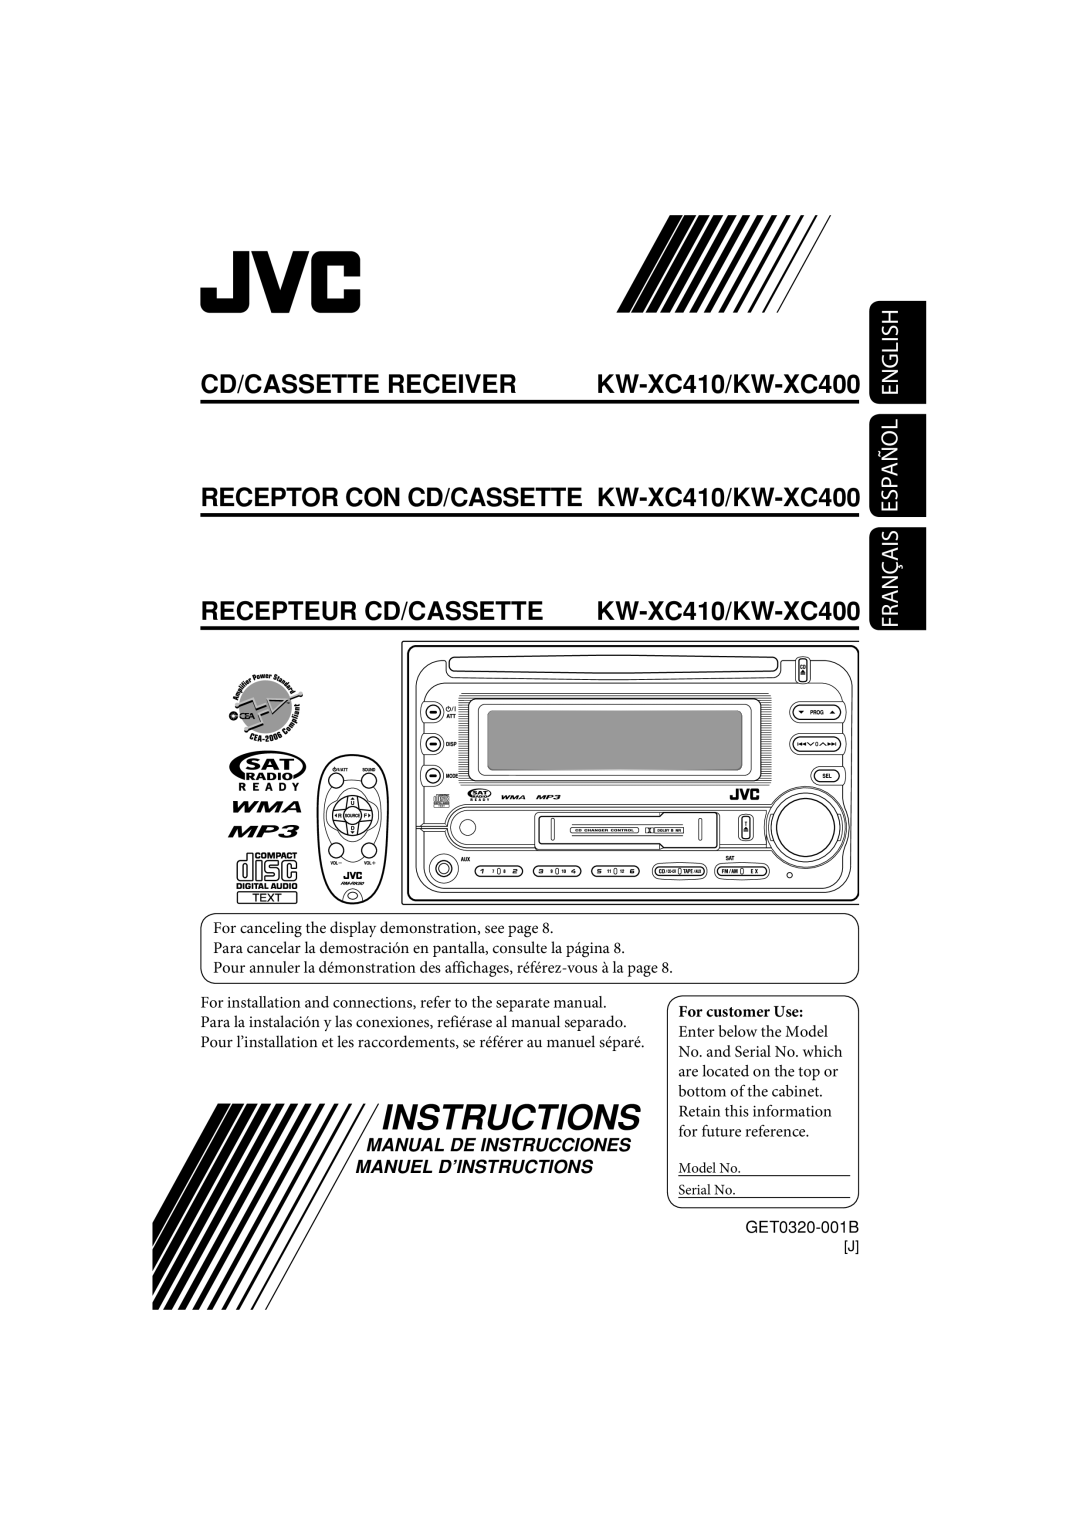 JVC manual Instructions, Cd/Cassette Receiver, Recepteur Cd/Cassette, KW-XC410/KW-XC400, Français Español English 